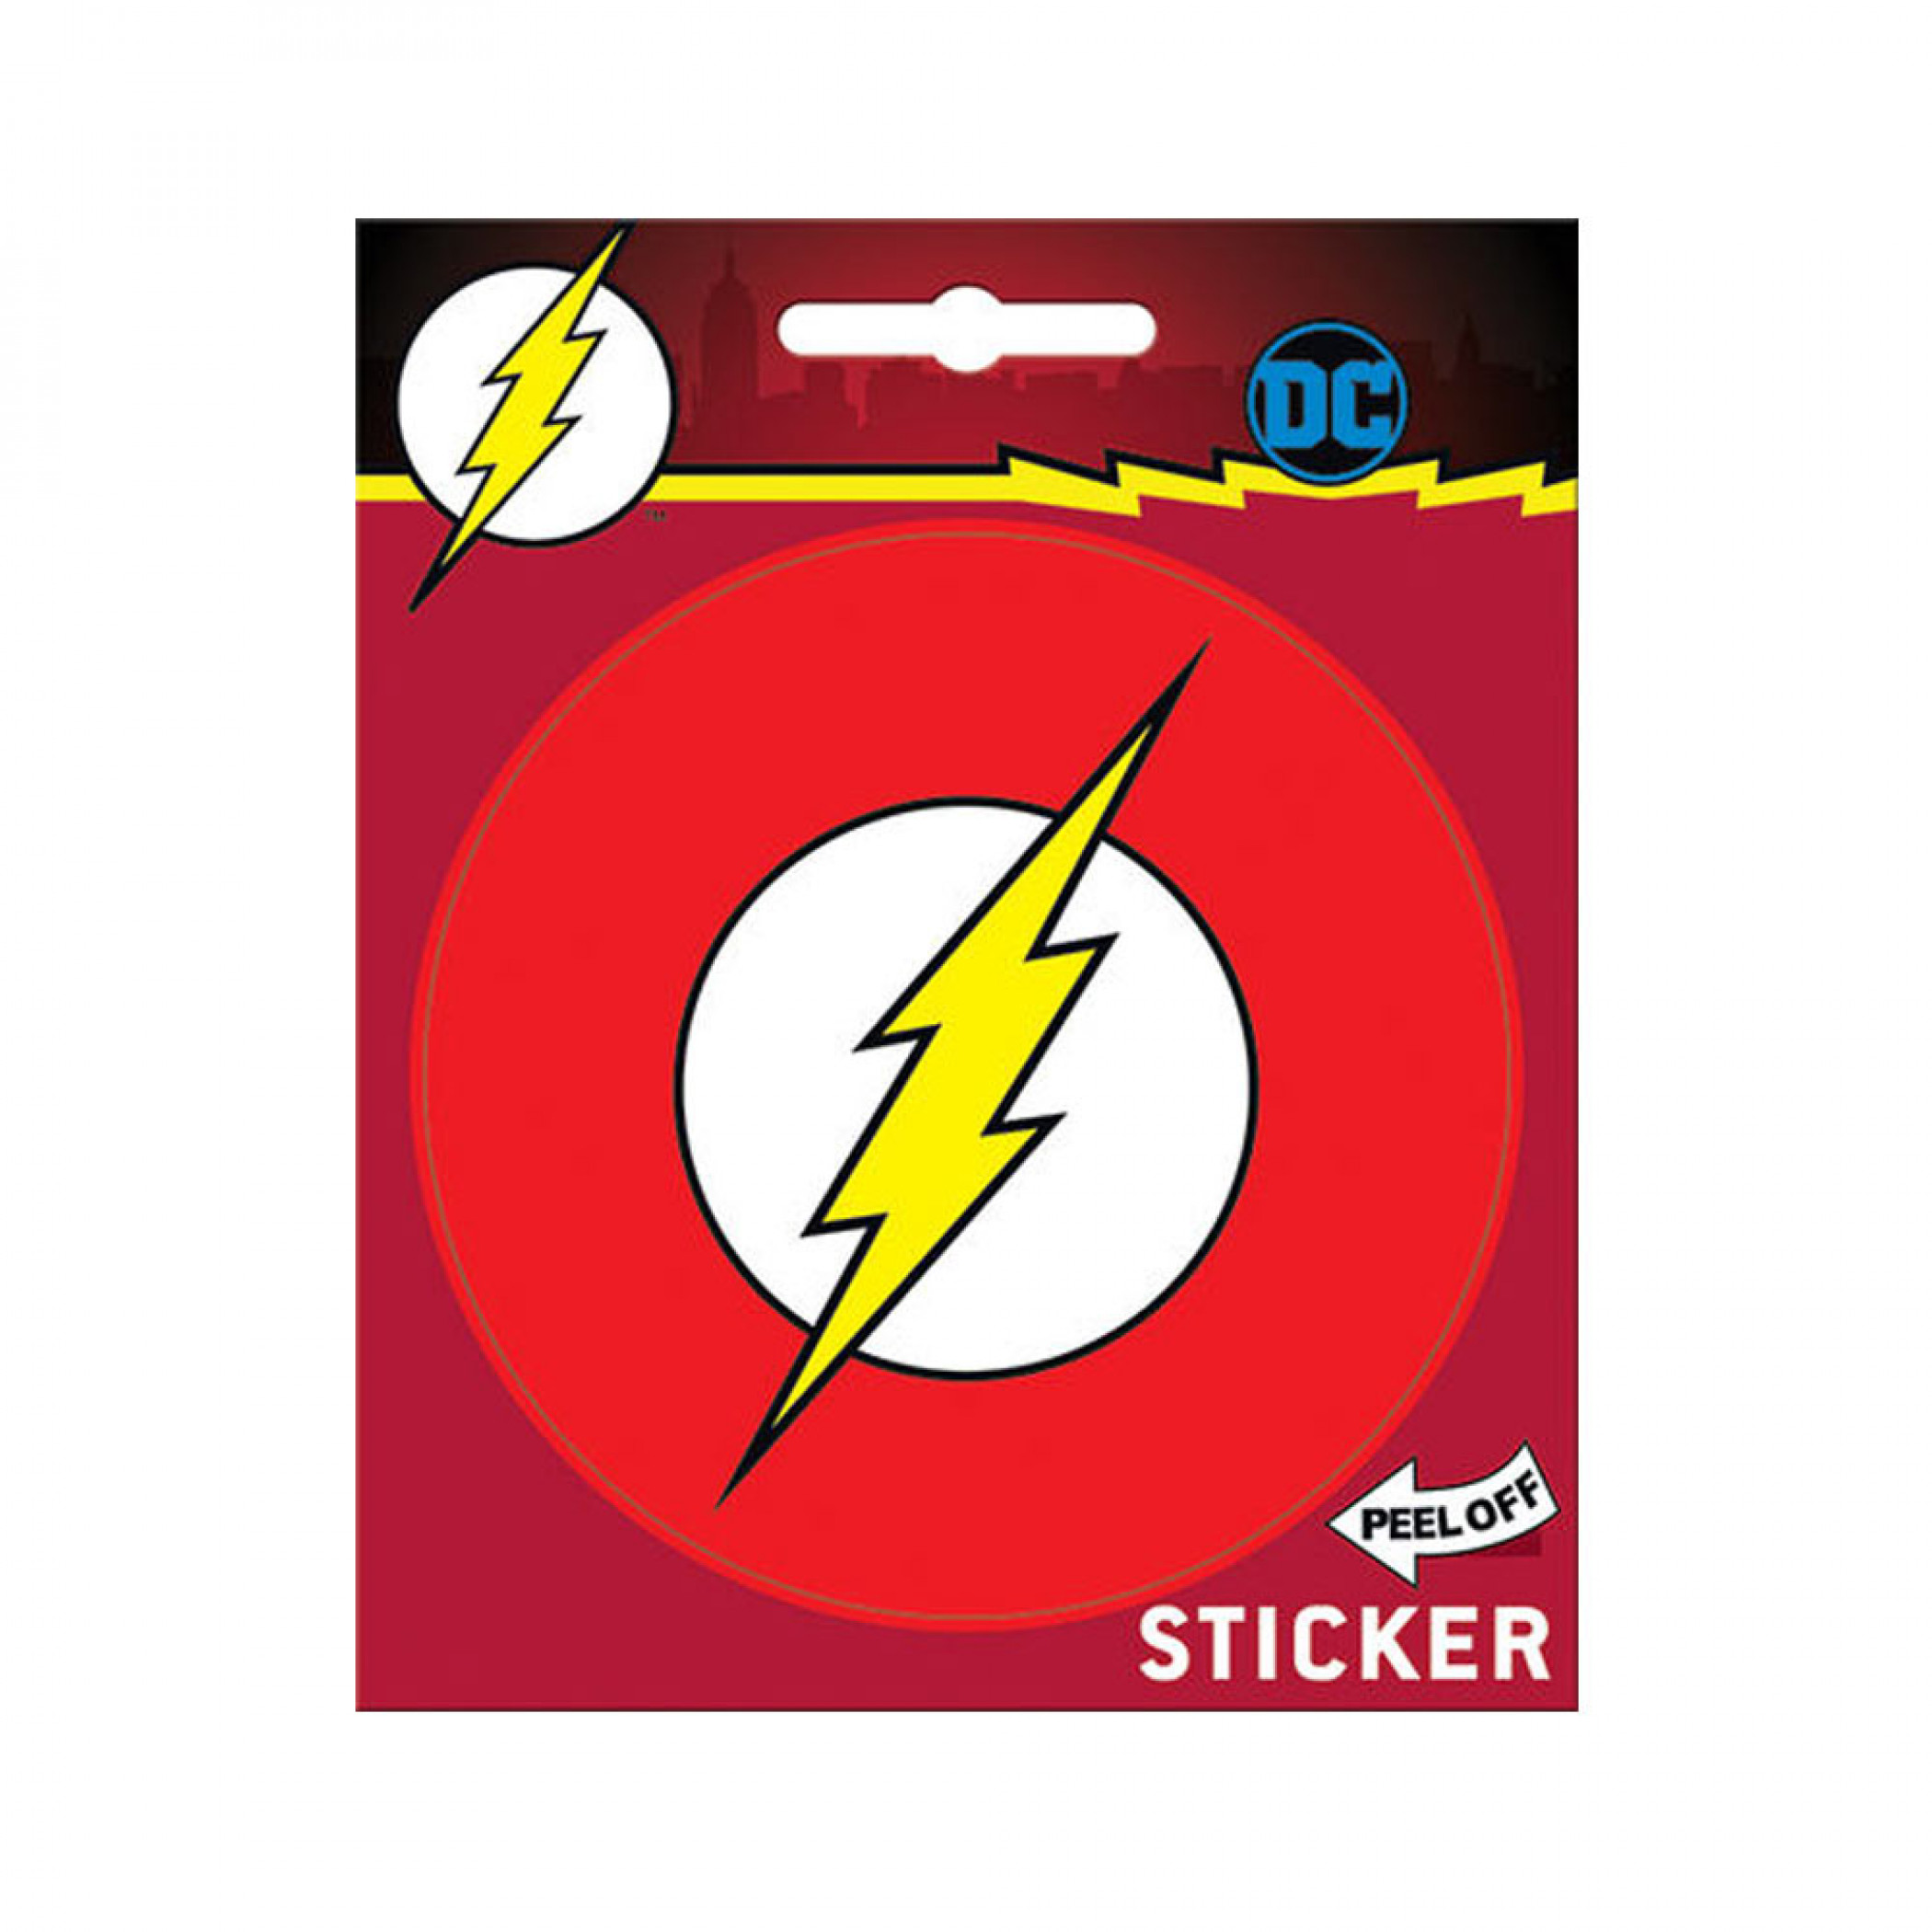 Flash Logo Sticker